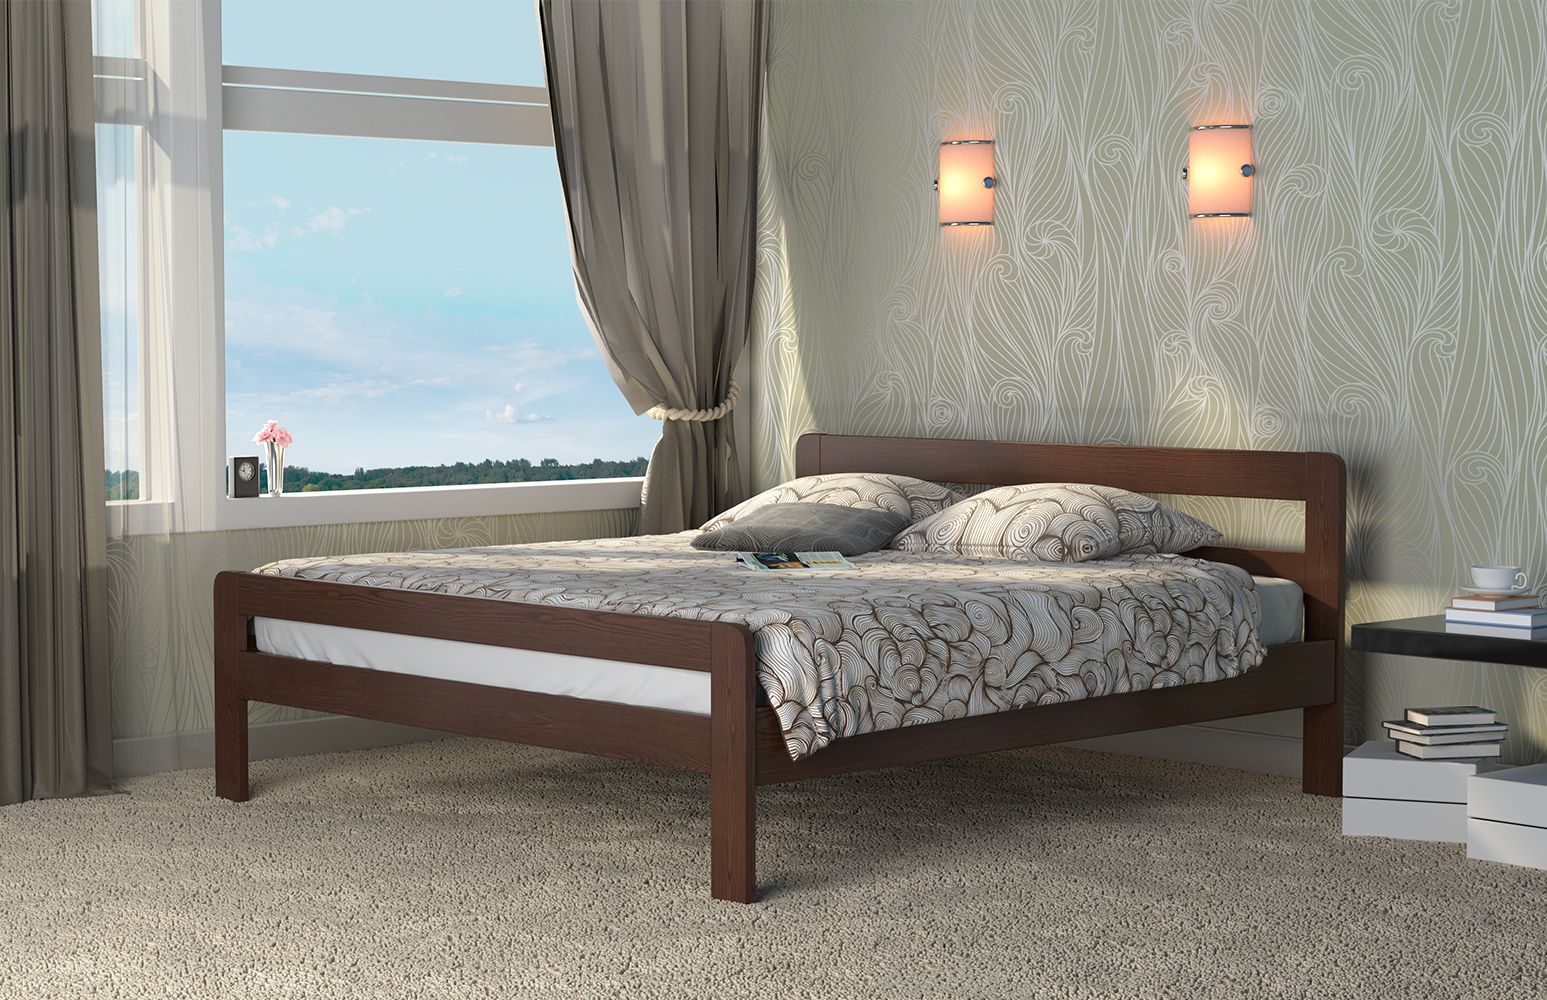 Кровать Dreamline Кредо (бук) изображен в другом виде